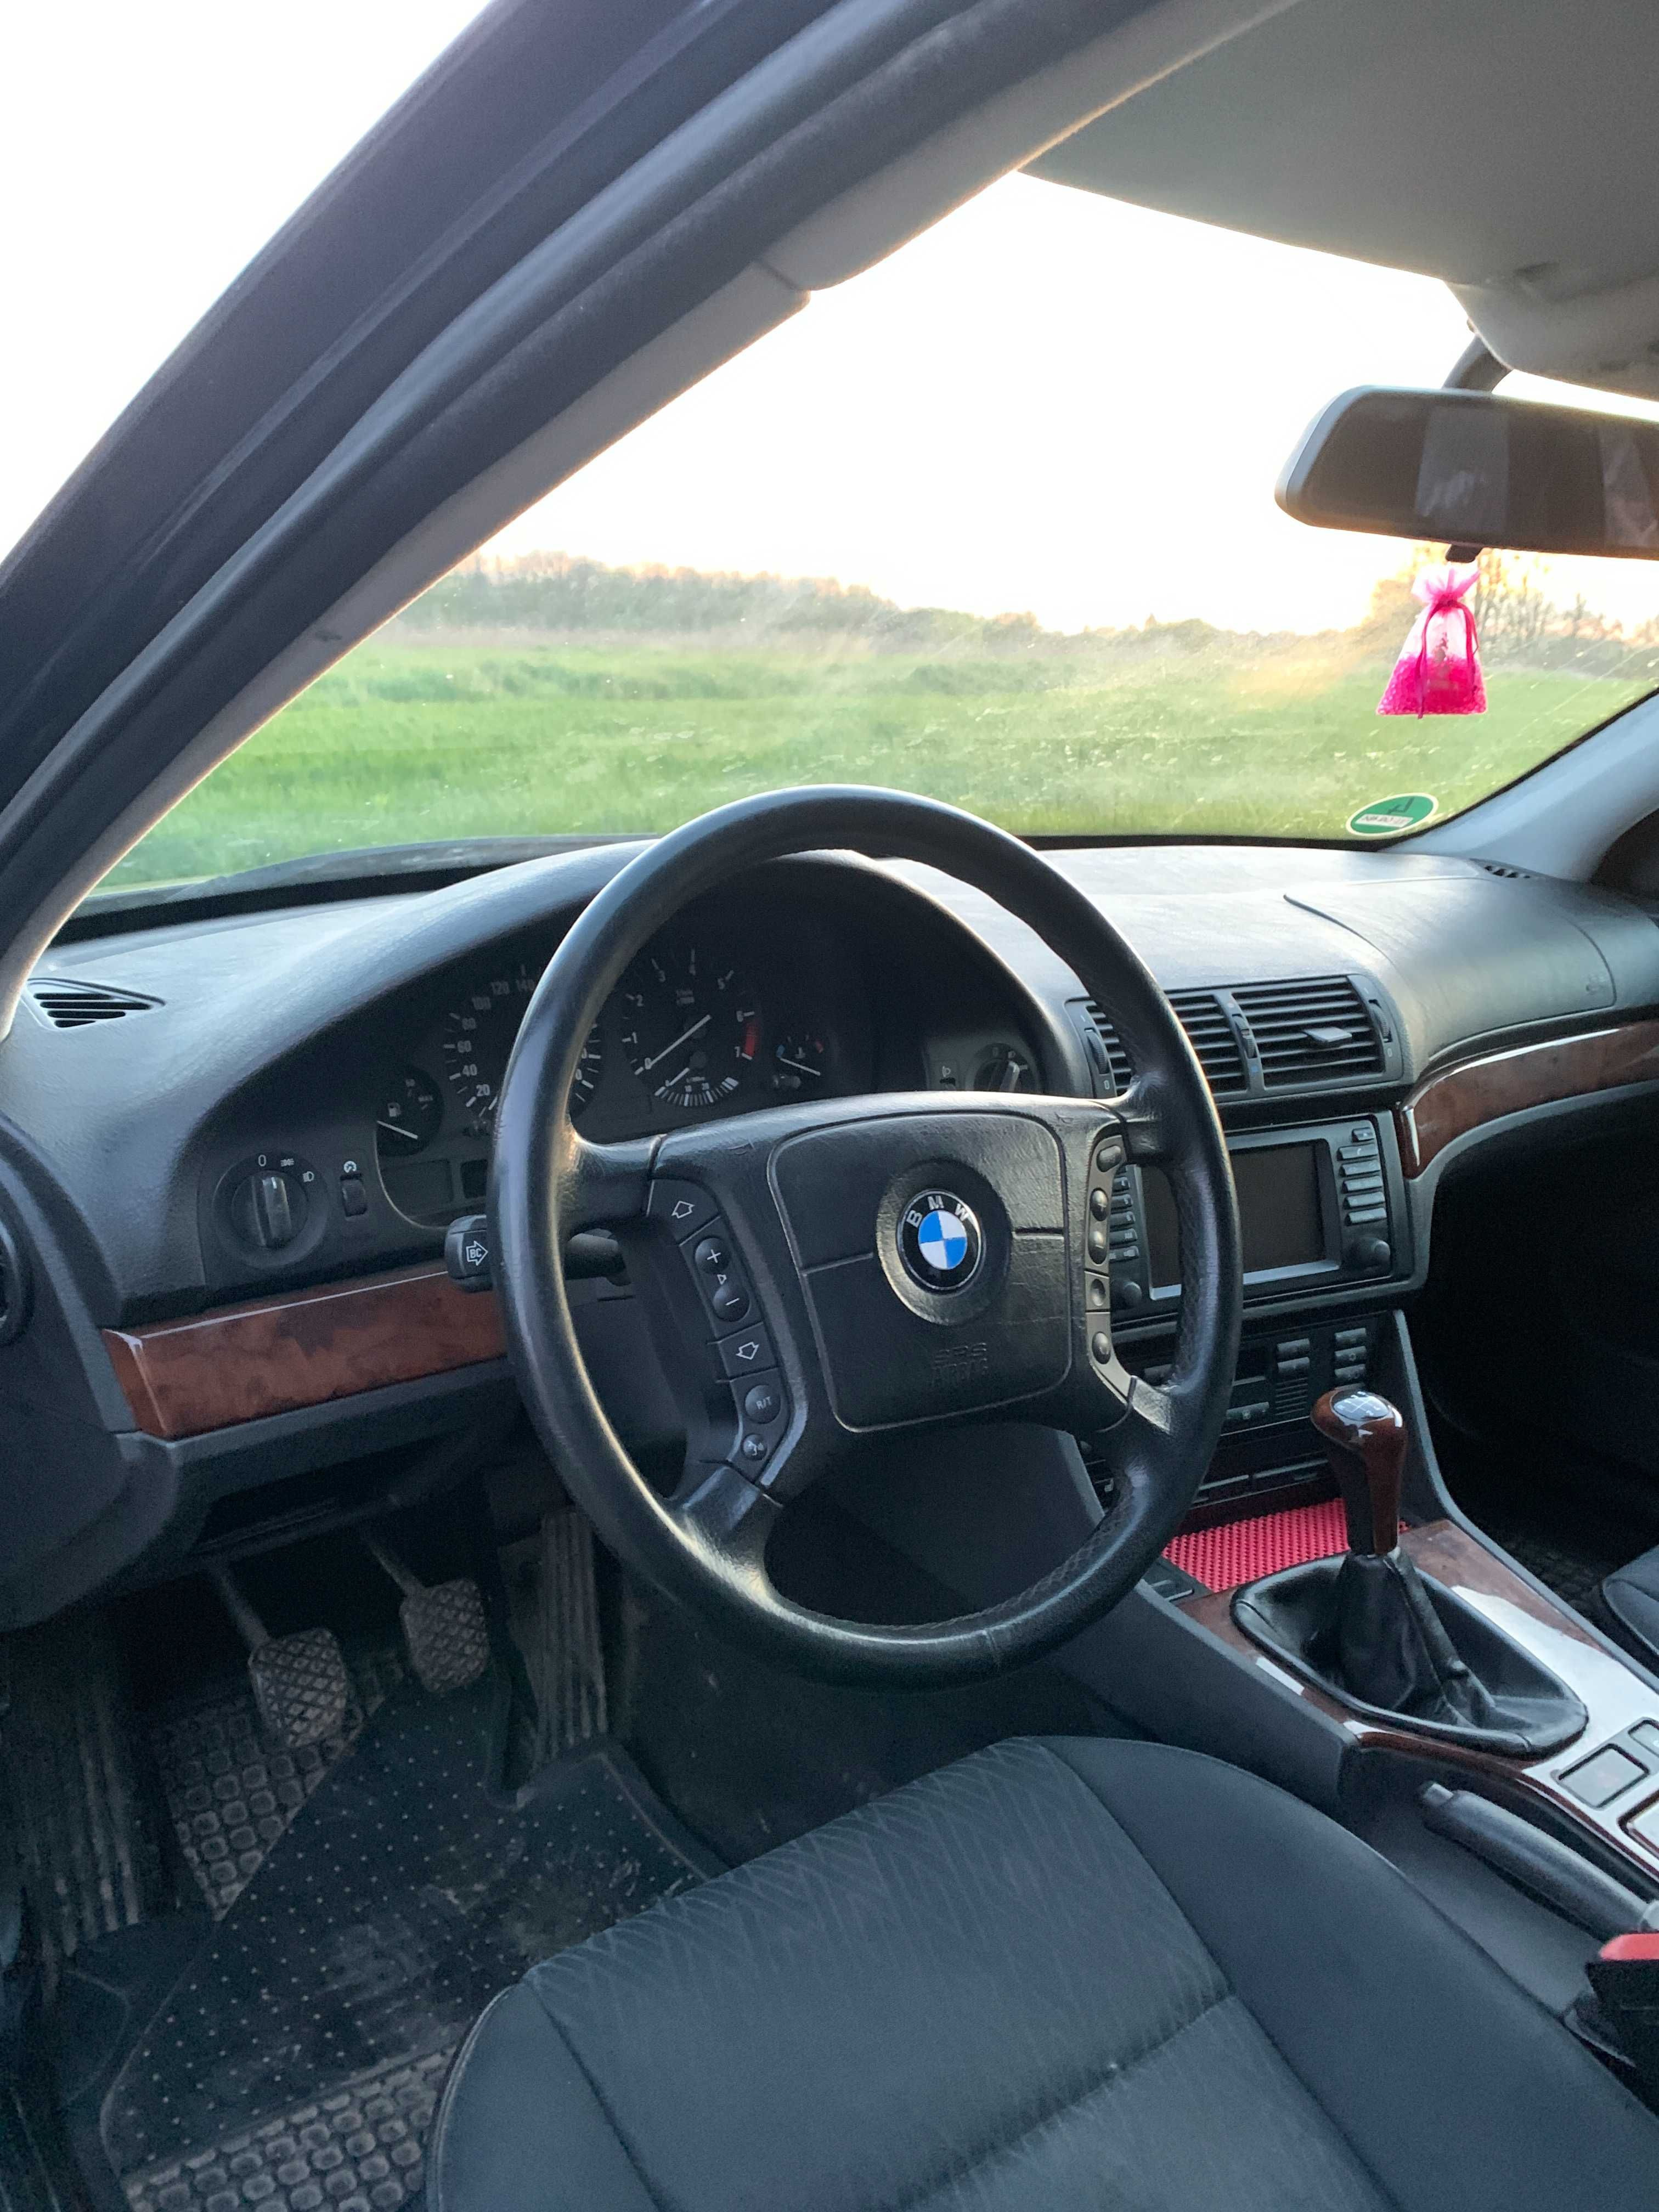 Продам BMW-520і е39